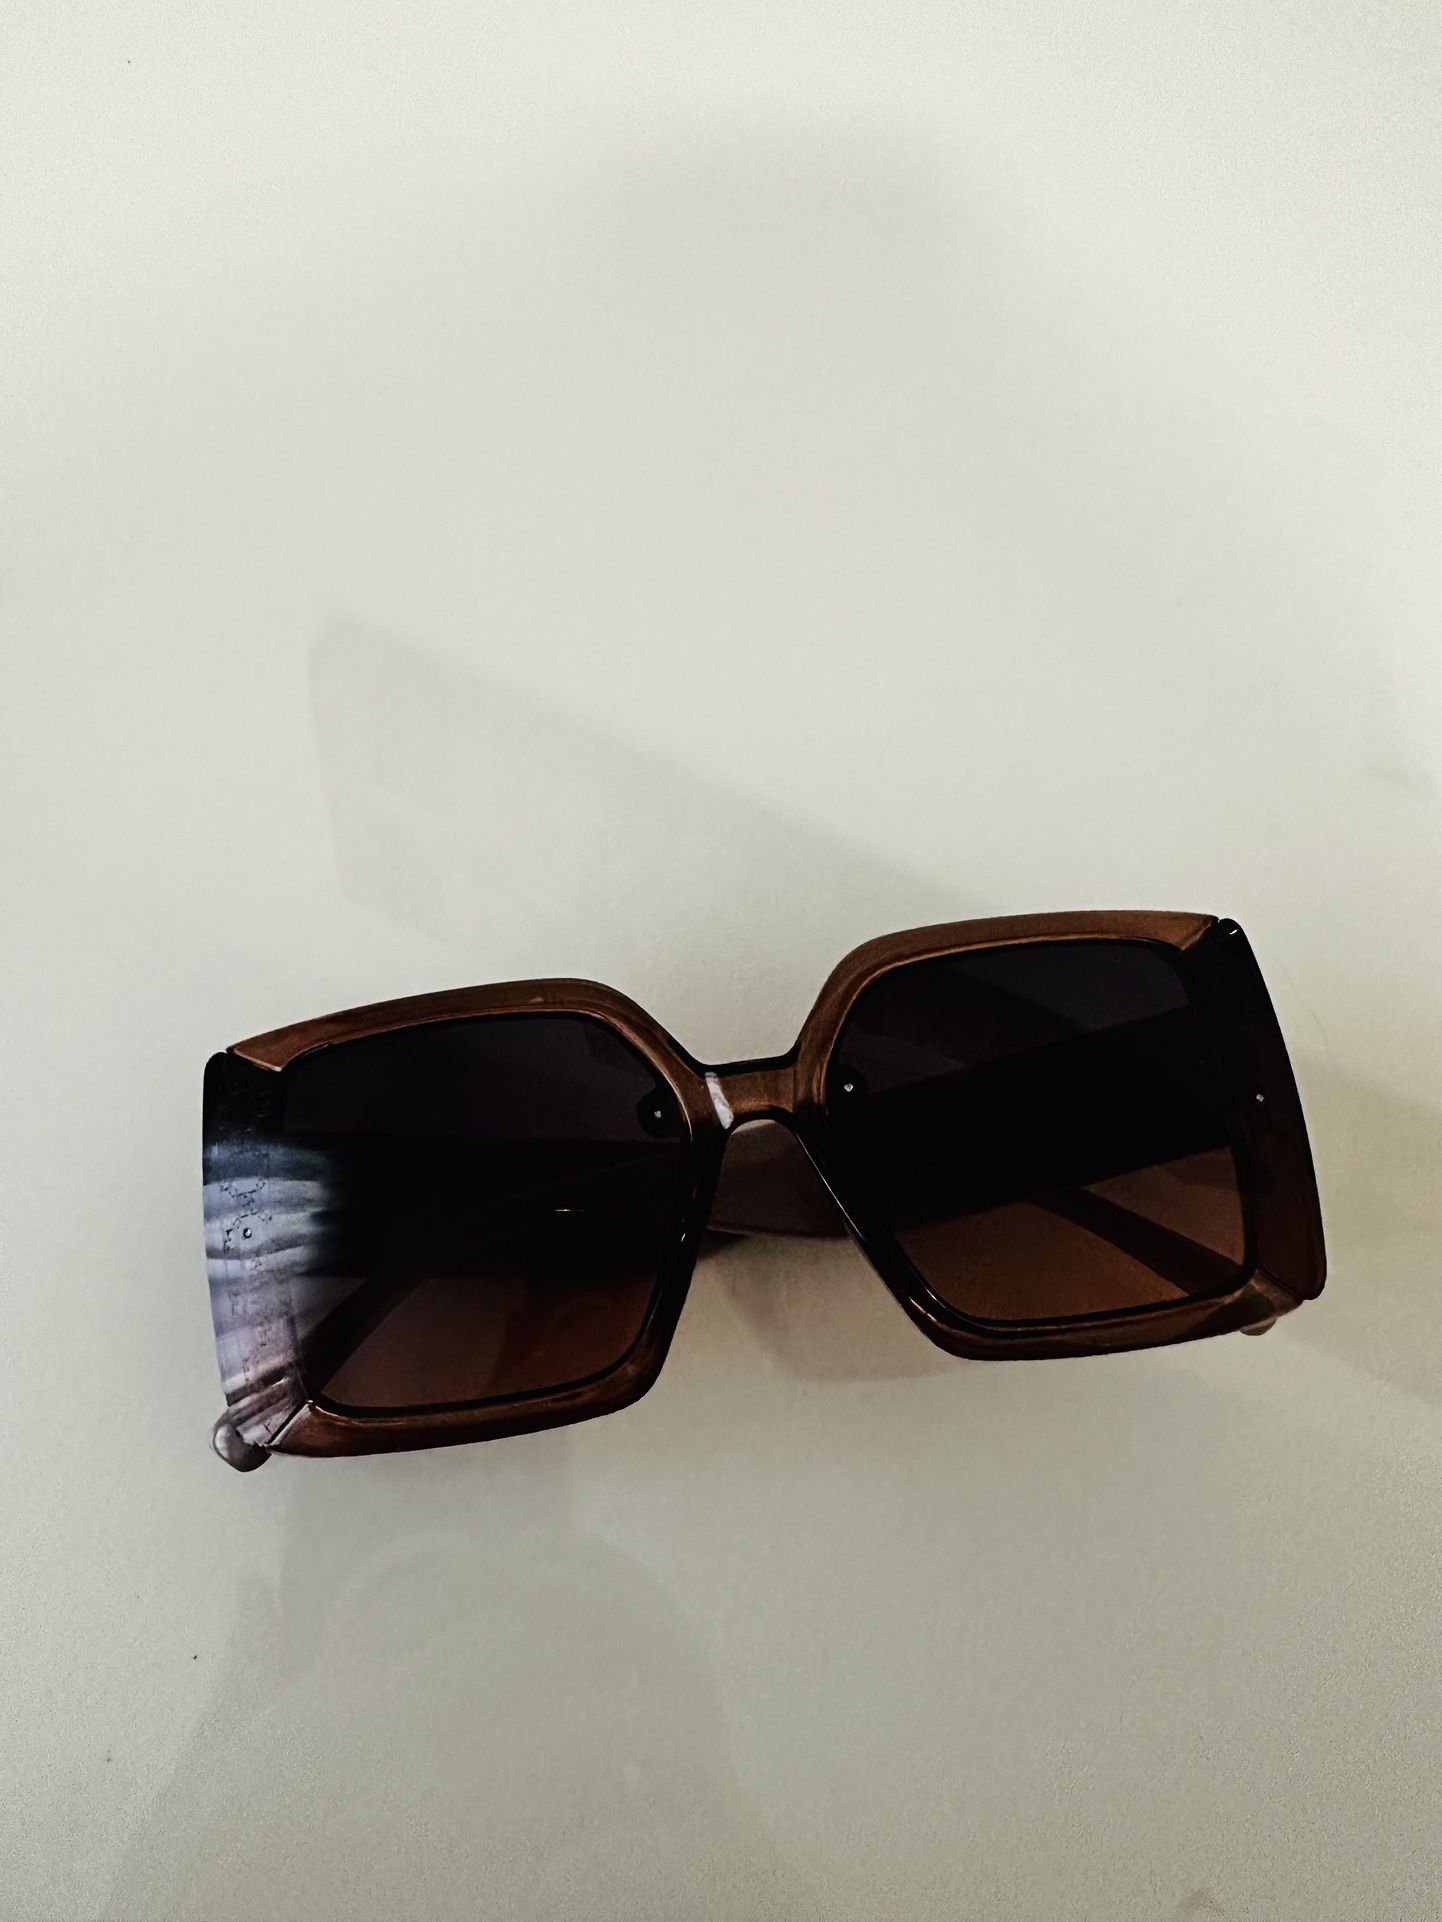 GG Sunglasses For Women 